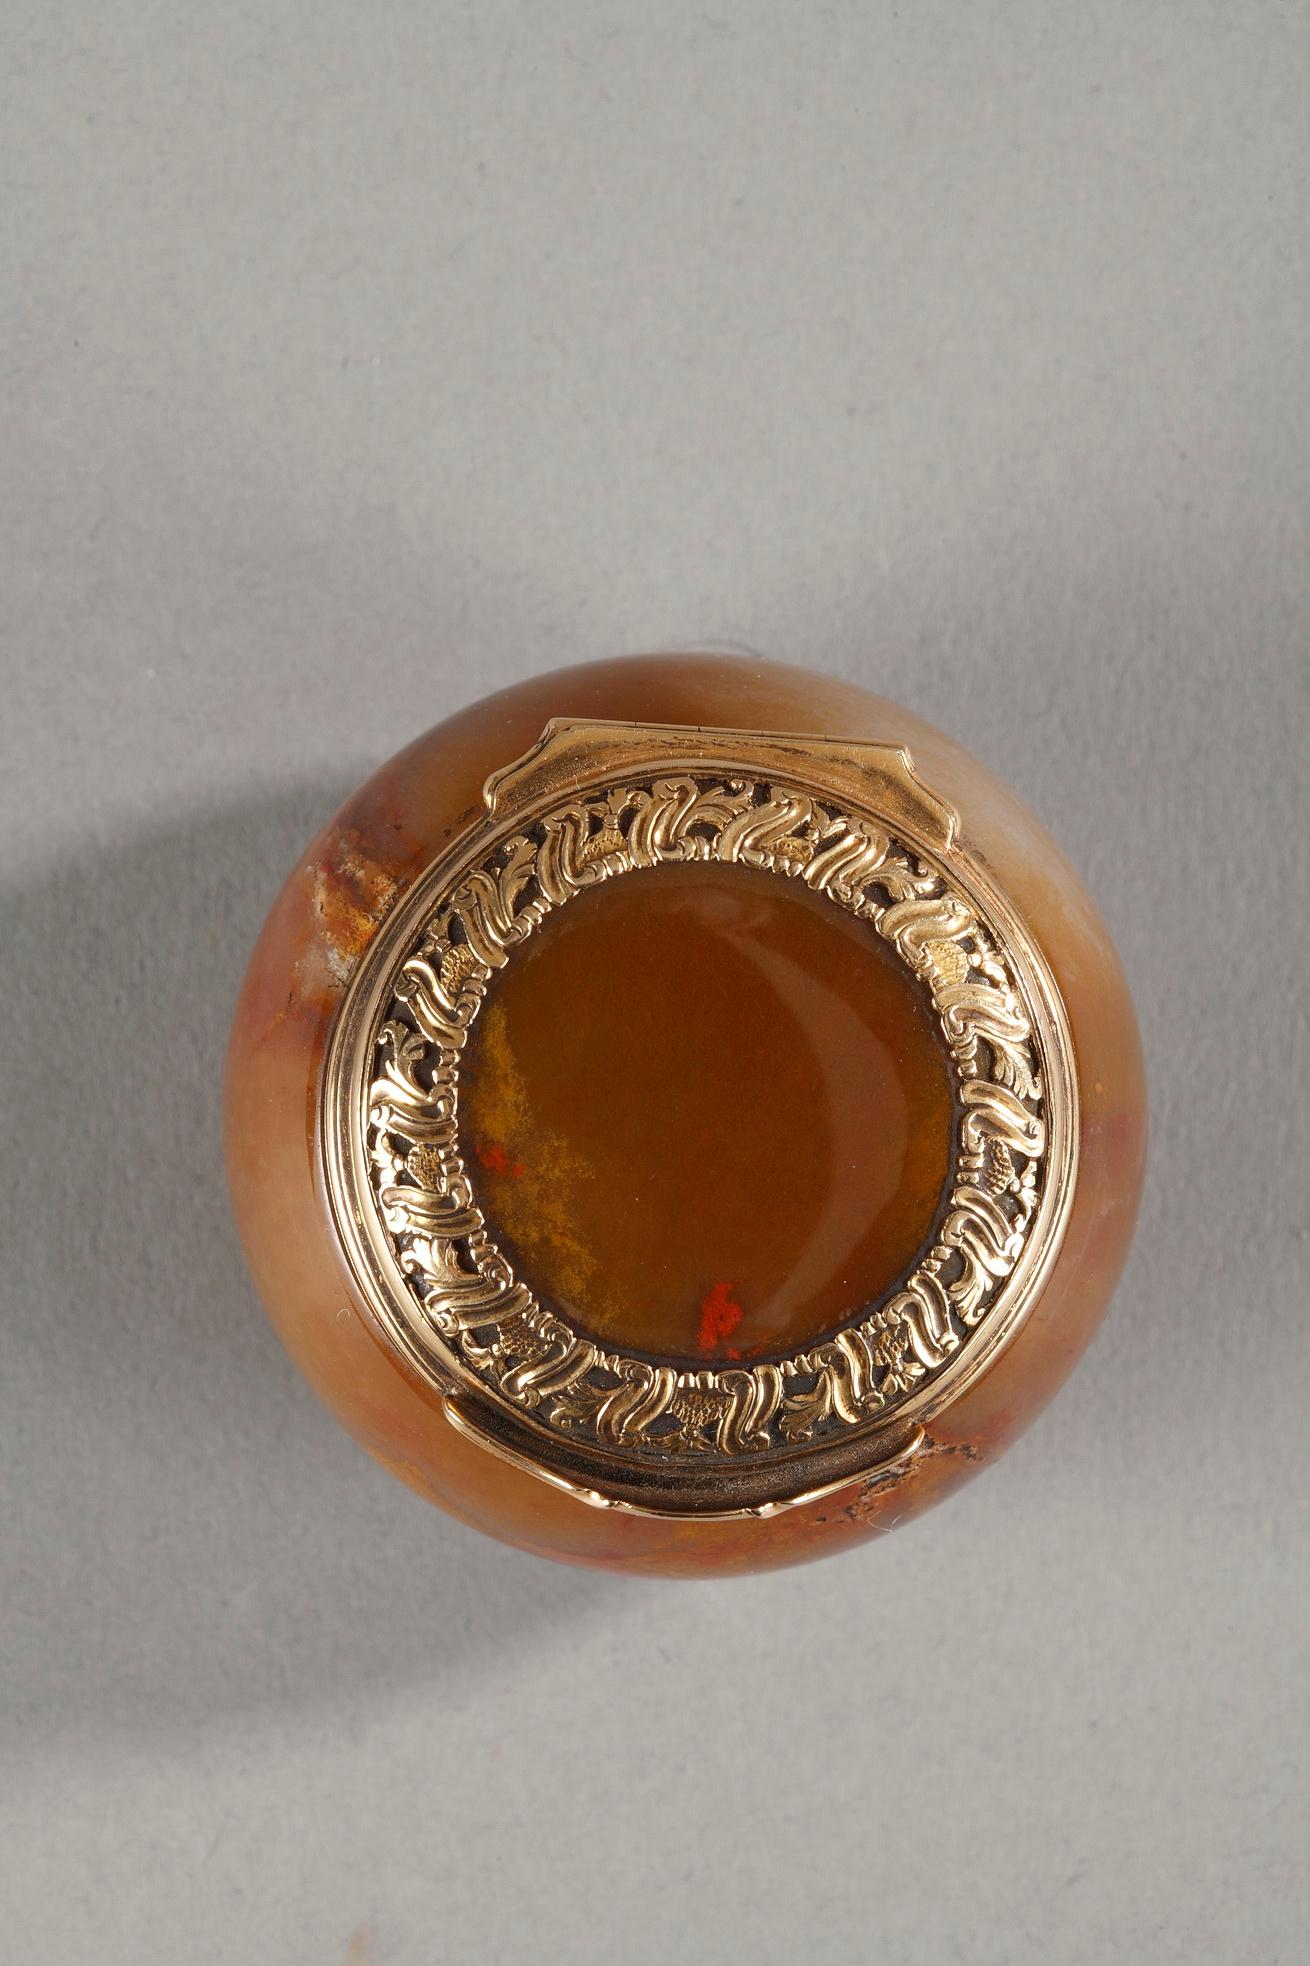 Boîte ou tabatière en agate de forme circulaire aux côtés légèrement bombés, le couvercle monté en or est ciselé d'enroulements.
Probablement de la période Georges II.
Or non marqué. Quelques usures habituelles, 18ème siècle.
Poids : 1,94 oz (55